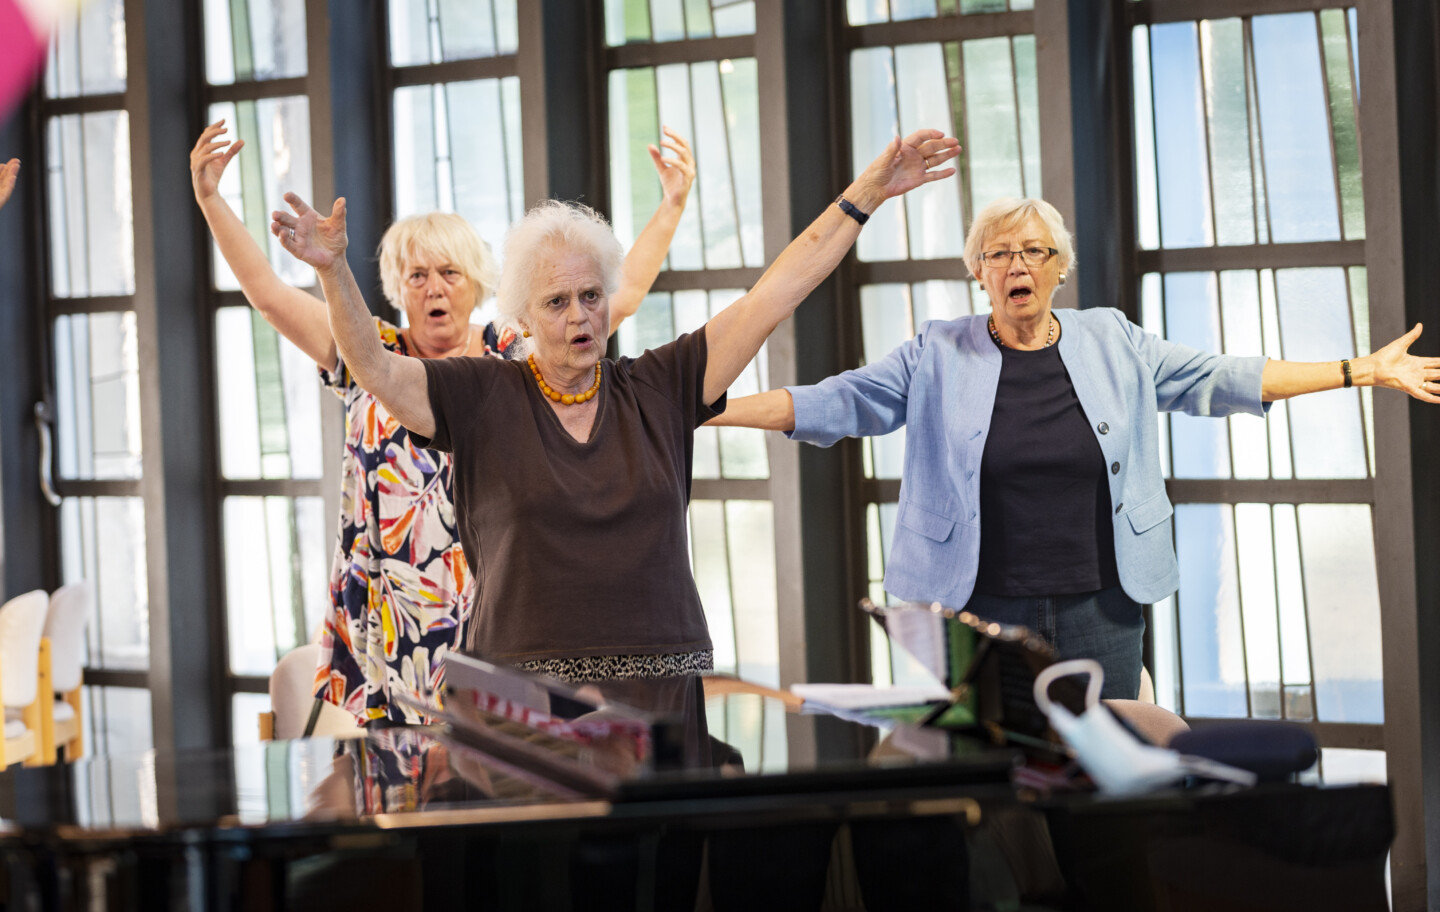 Drei singende ältere Frauen mit erhobenen Armen